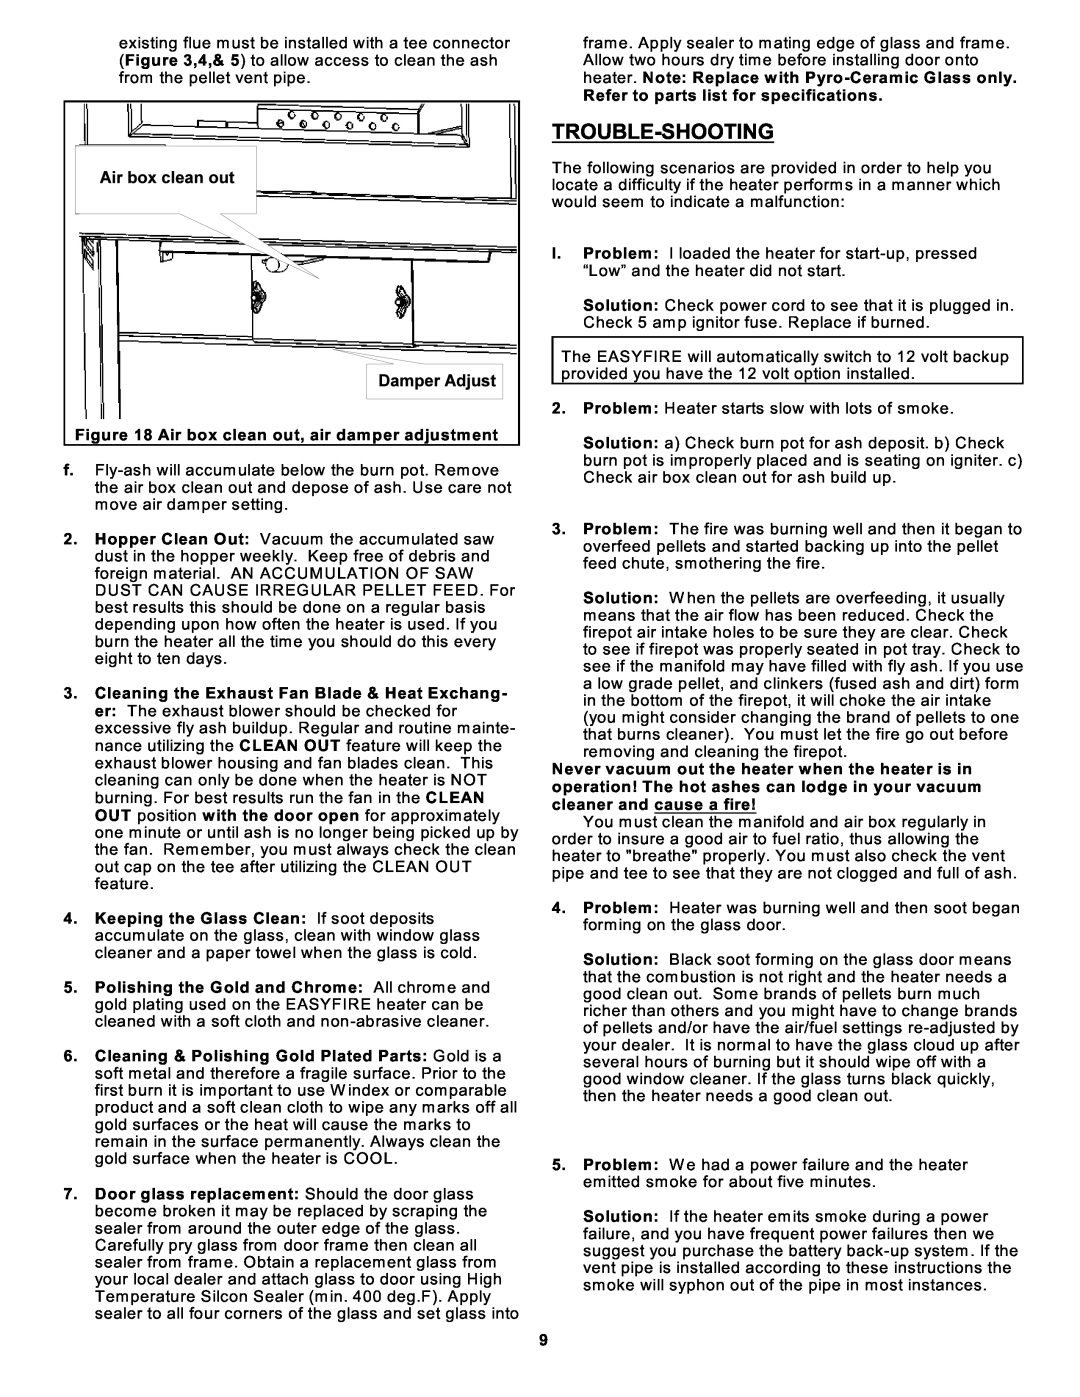 Sierra Products EF5001B-AL owner manual Trouble-Shooting 